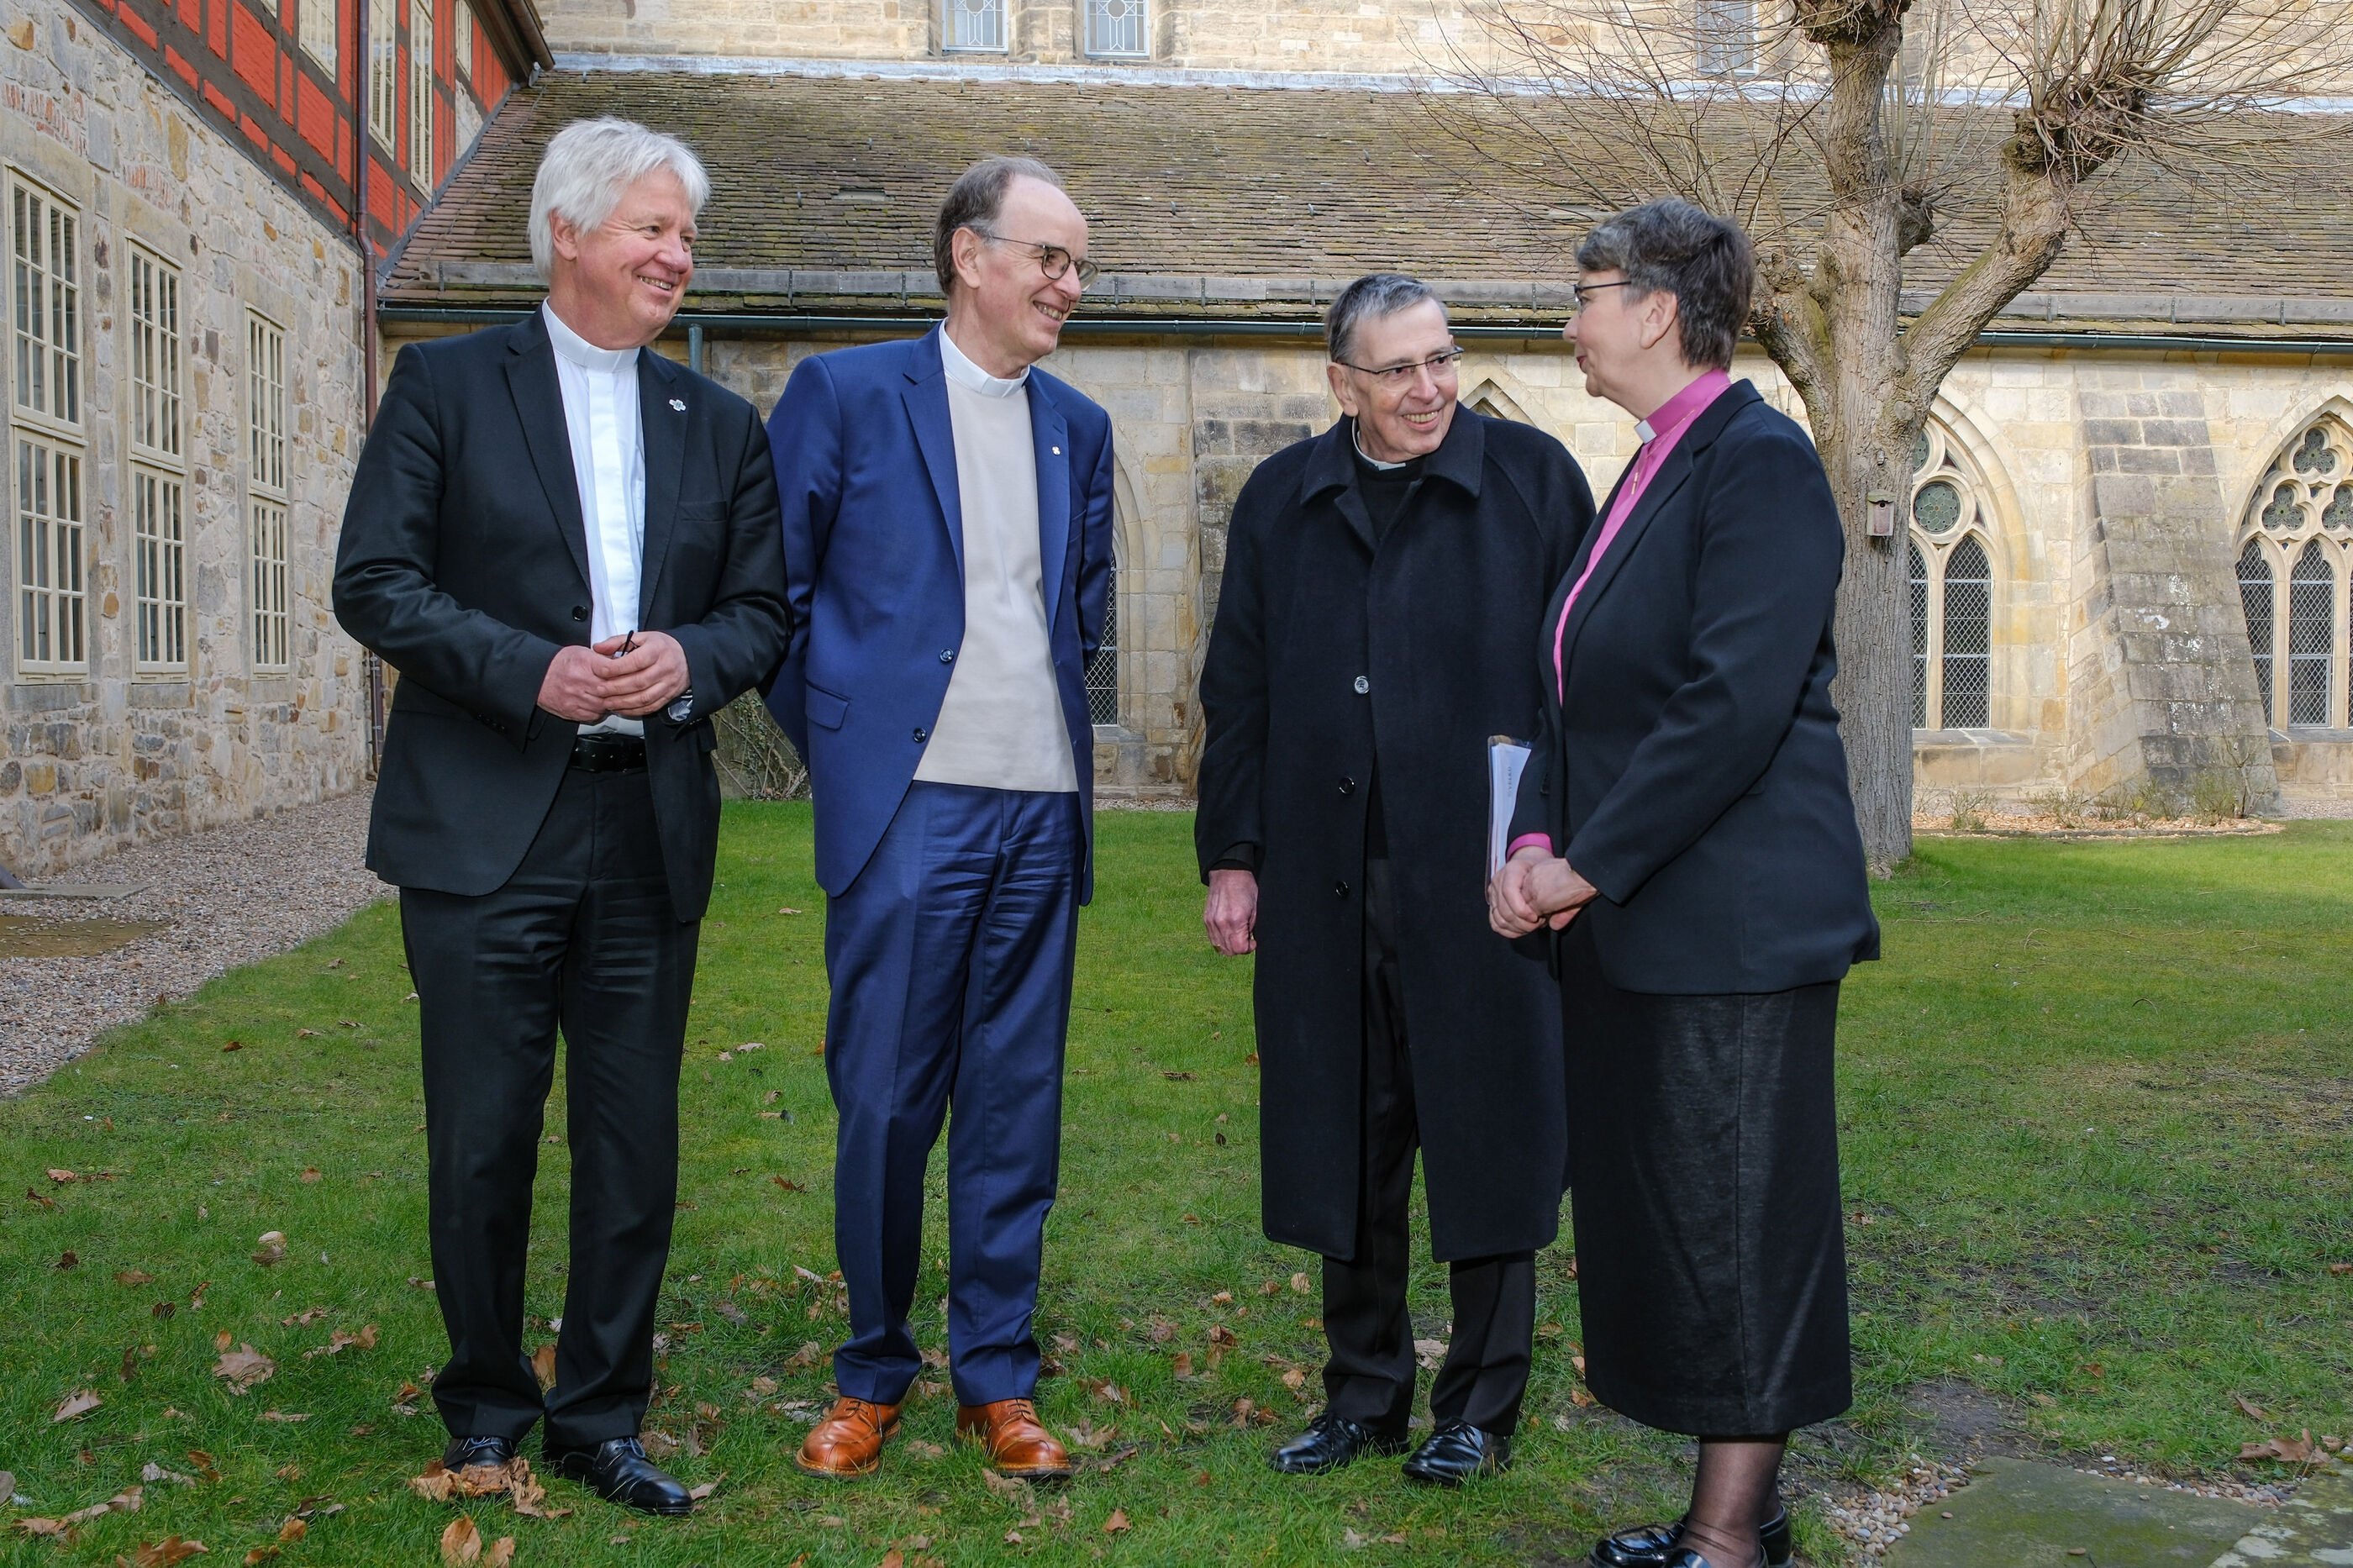 Trafen sich zu Gesprächen im Kloster Loccum (von links): Landesbischof Karl-Hinrich Manzke, Landesbischof Ralf Meister, Kurienkardinal Kurt Koch und Landesbischöfin Kristina Kühnbaum-Schmidt.